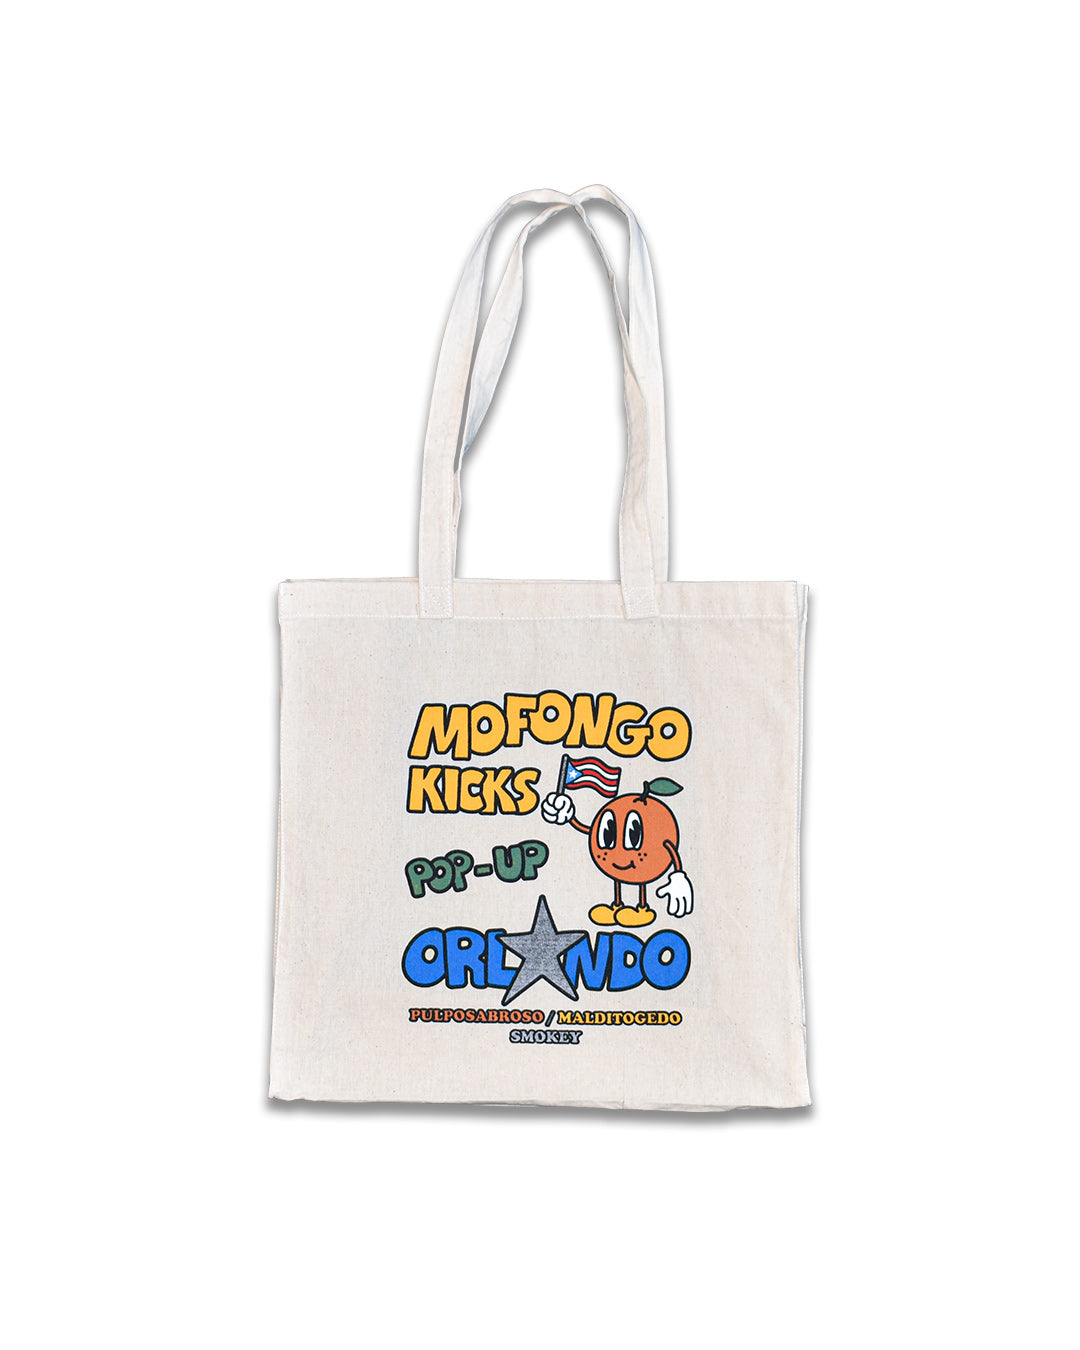 Orlando Pop-Up Tote Bag